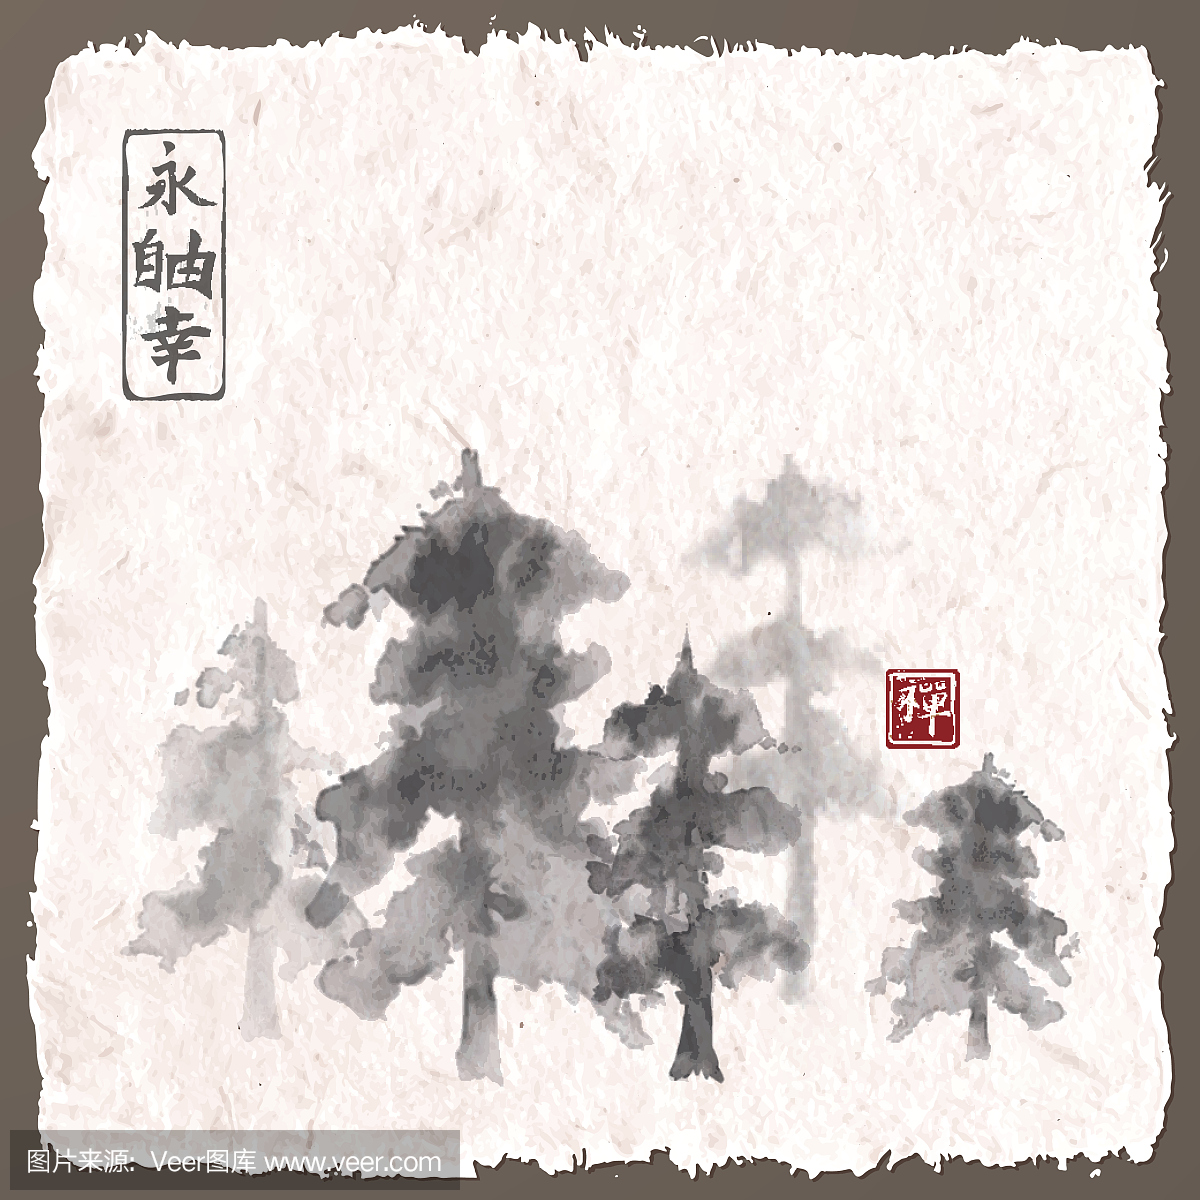 森林树木在雾中。传统日本水墨画总结。